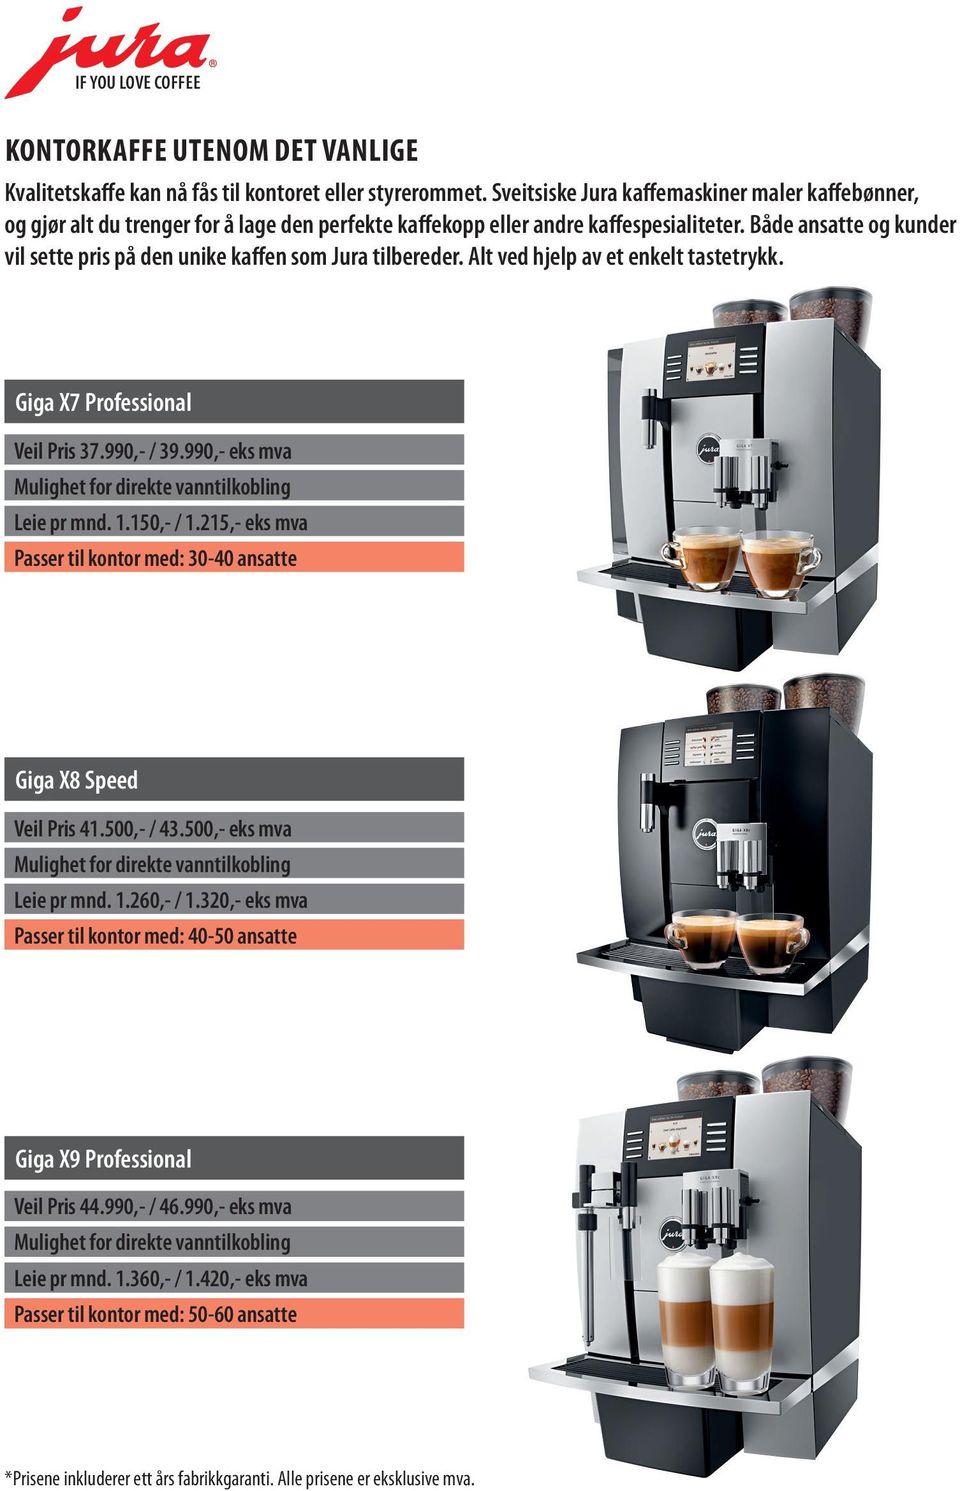 Både ansatte og kunder vil sette pris på den unike kaffen som Jura tilbereder. Alt ved hjelp av et enkelt tastetrykk. Giga X7 Professional Veil Pris 37.990,- / 39.